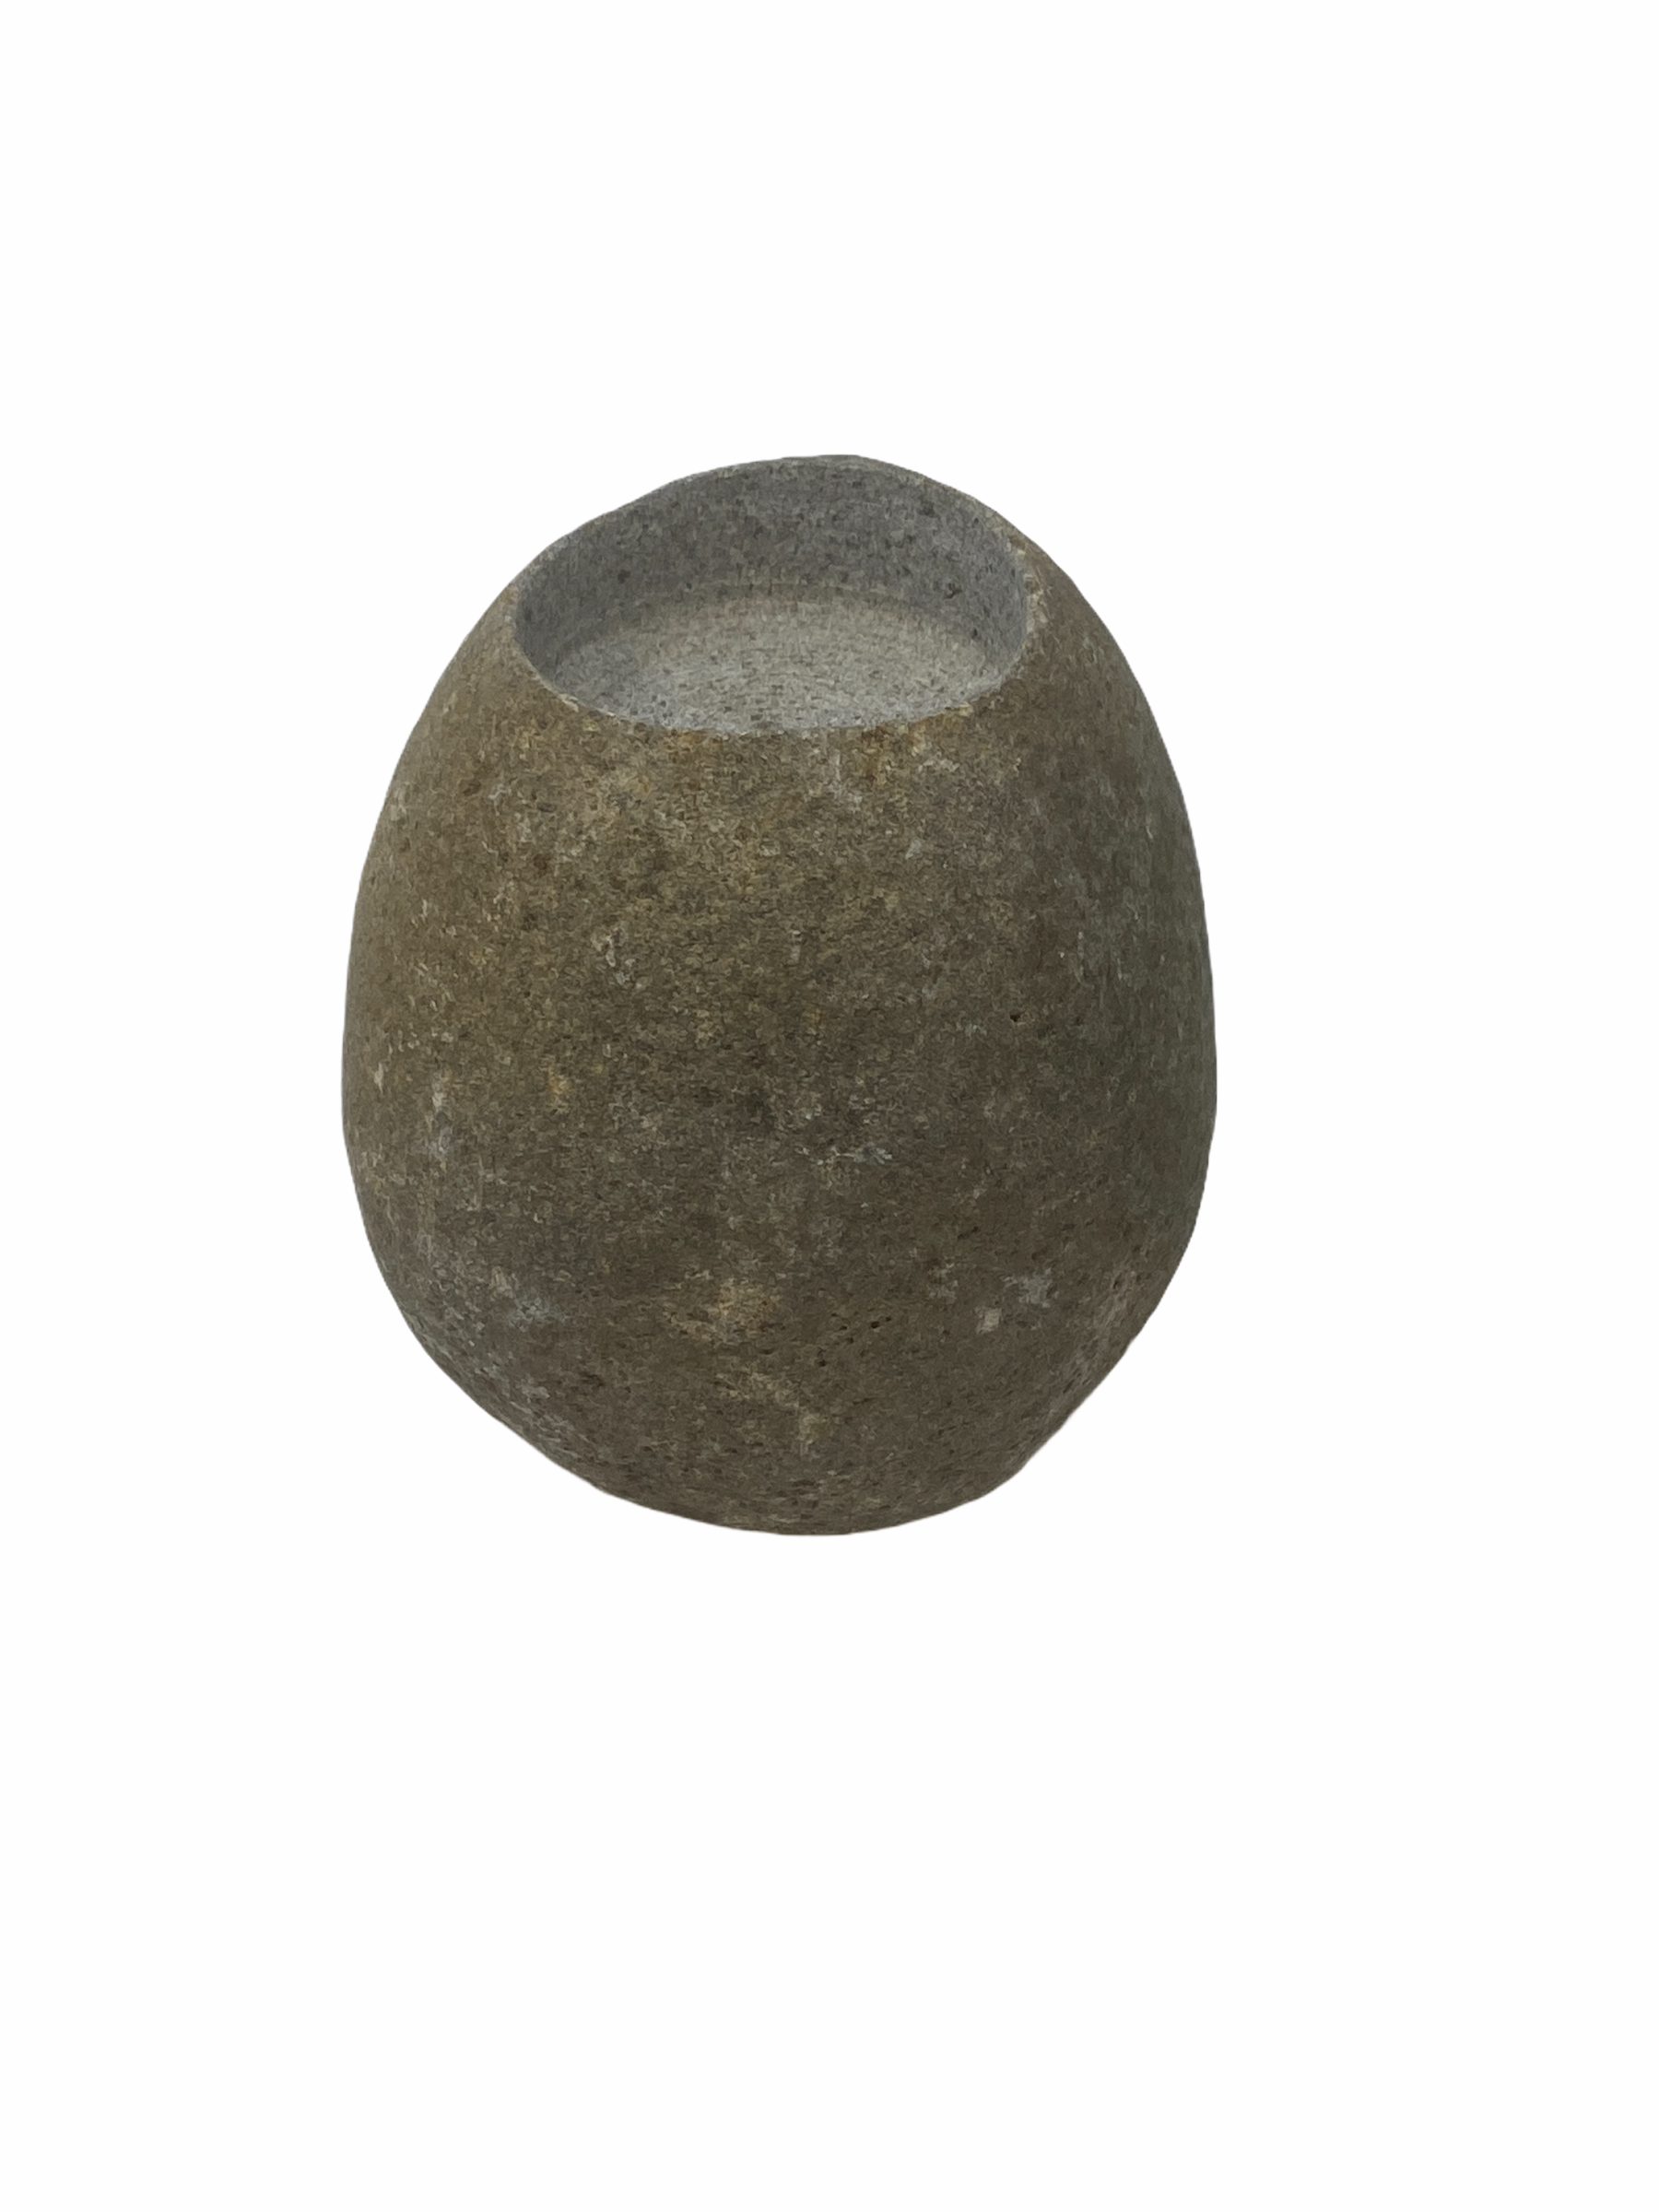 Zimbabwe Stone carved Tea Light holder - M